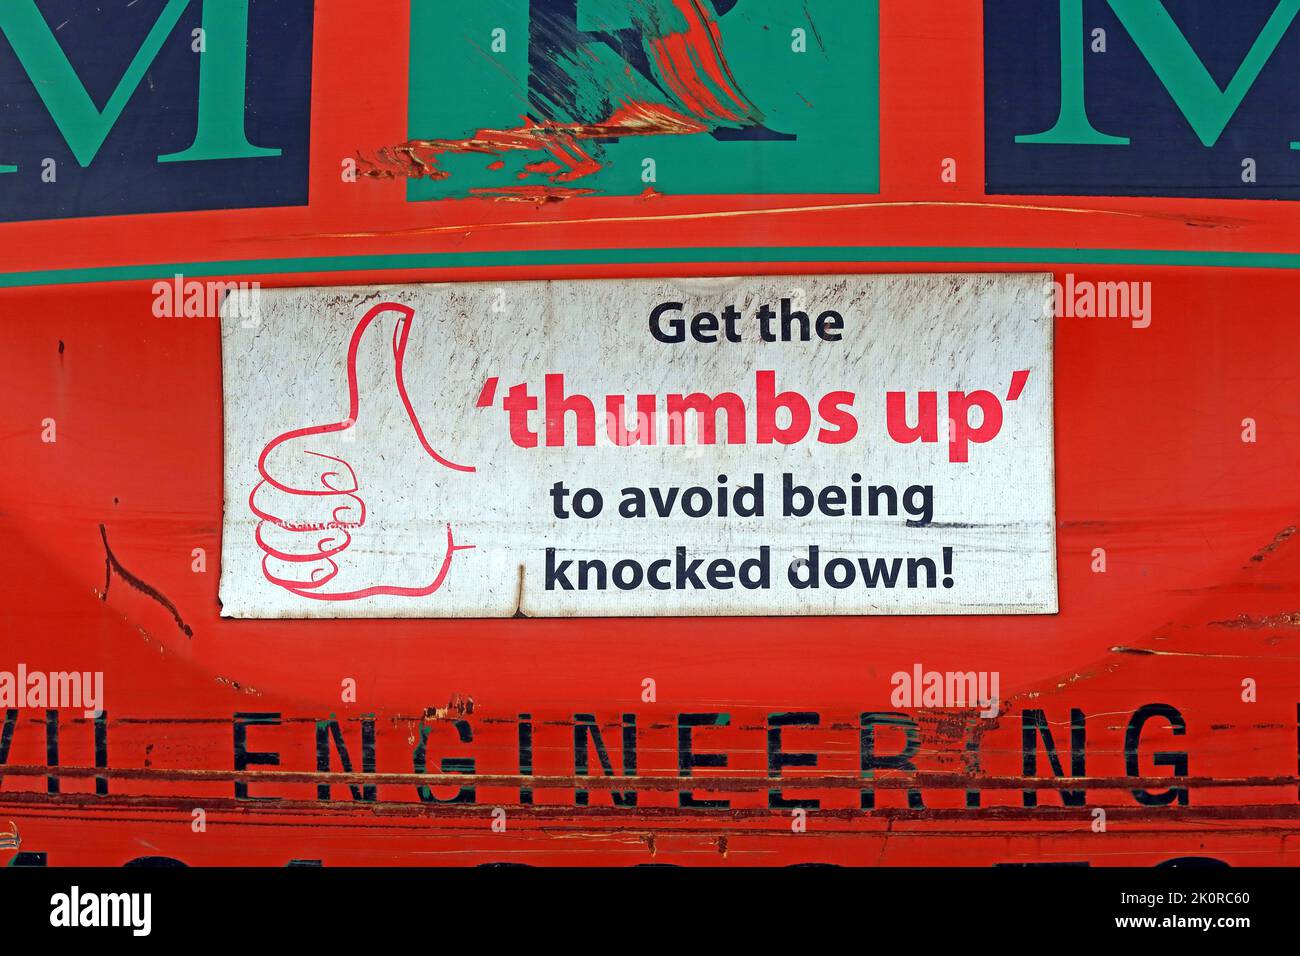 Panneau d'avertissement sur le véhicule de construction, levez les pouces pour éviter d'être renversé - Avis de santé et de sécurité Banque D'Images